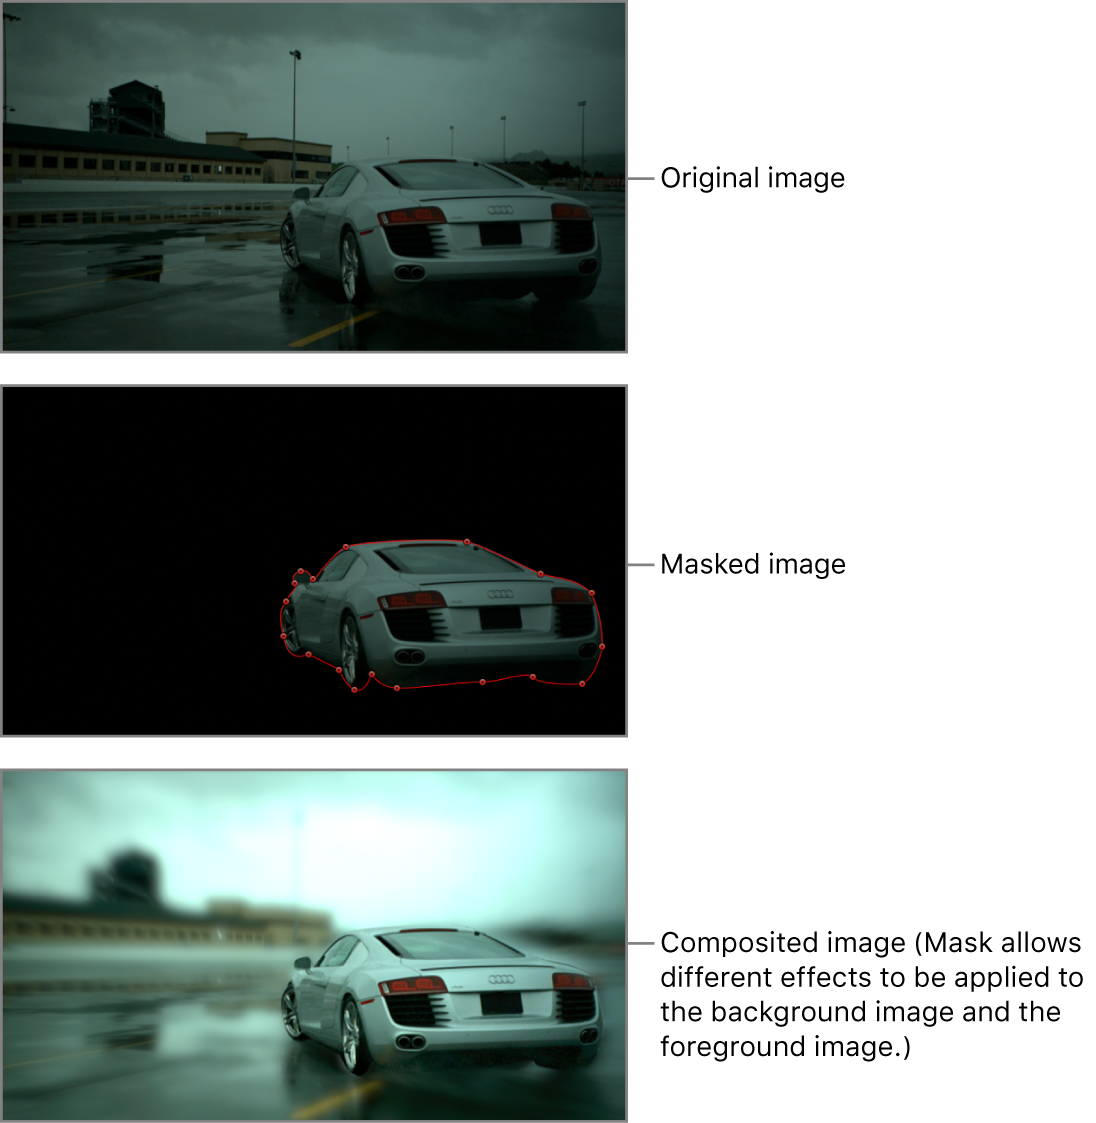 Lienzo y una imagen de un coche antes de enmascararla, máscara dibujada alrededor del coche y efecto de rotoscopia final (el fondo modificado por un filtro de difuminado, pero no el coche)